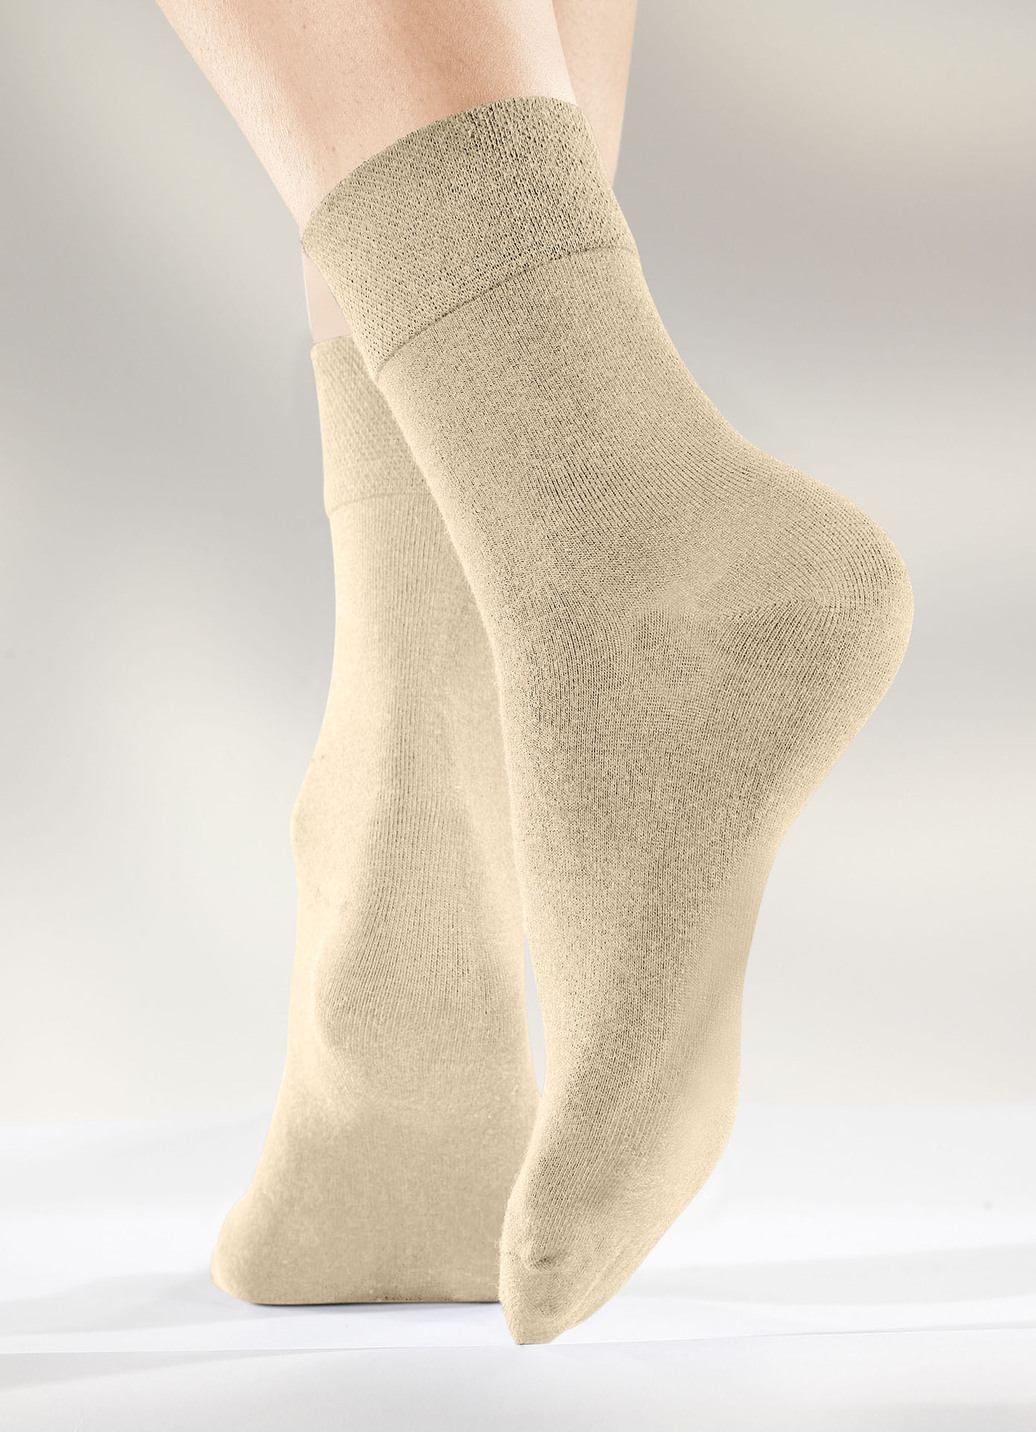 Sechserpack Socken in verschiedenen Farbstellungen, 2X Beige, 2X Sand, 2X Khaki, Größe 3 (Schuhgr. 43-46) von BADER